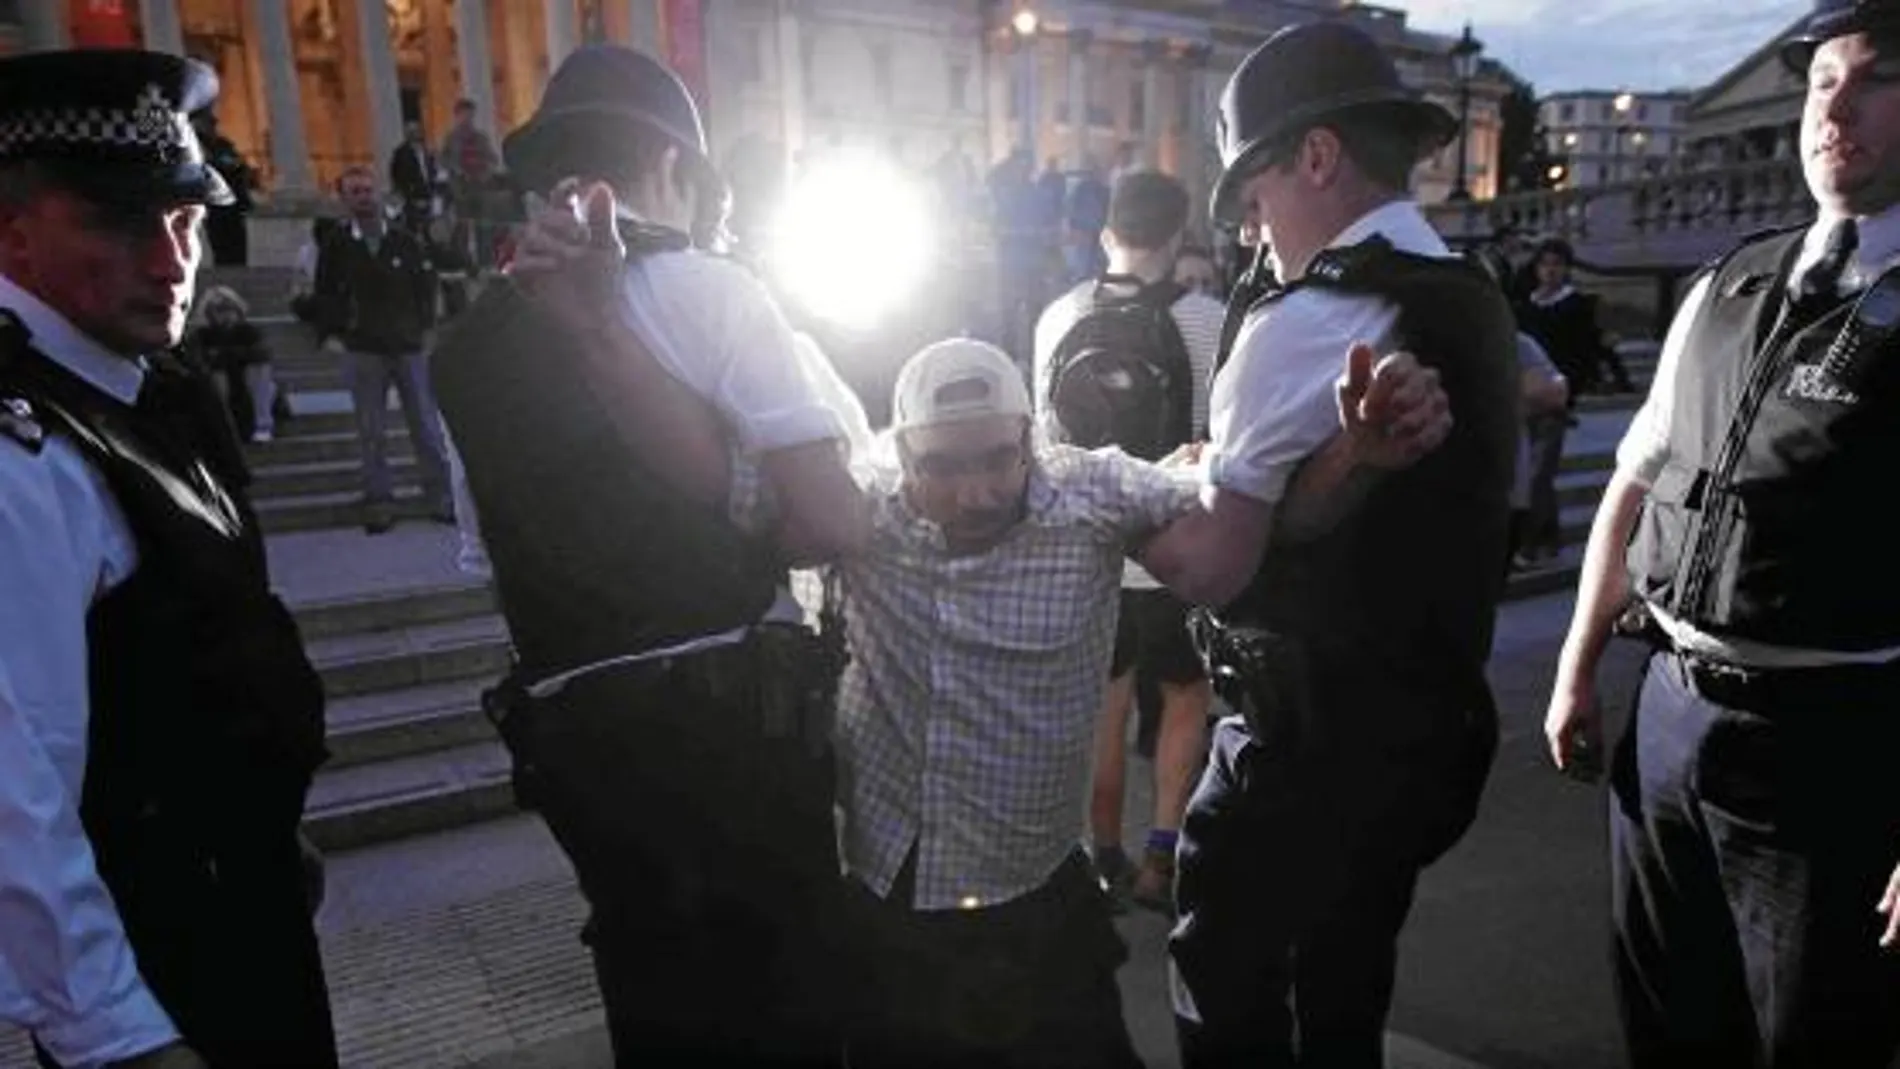 La Policía se lleva a uno de los activistas que ayudó a montar tiendas de campaña en plena Trafalgar Square, ayer por la noche en Londres